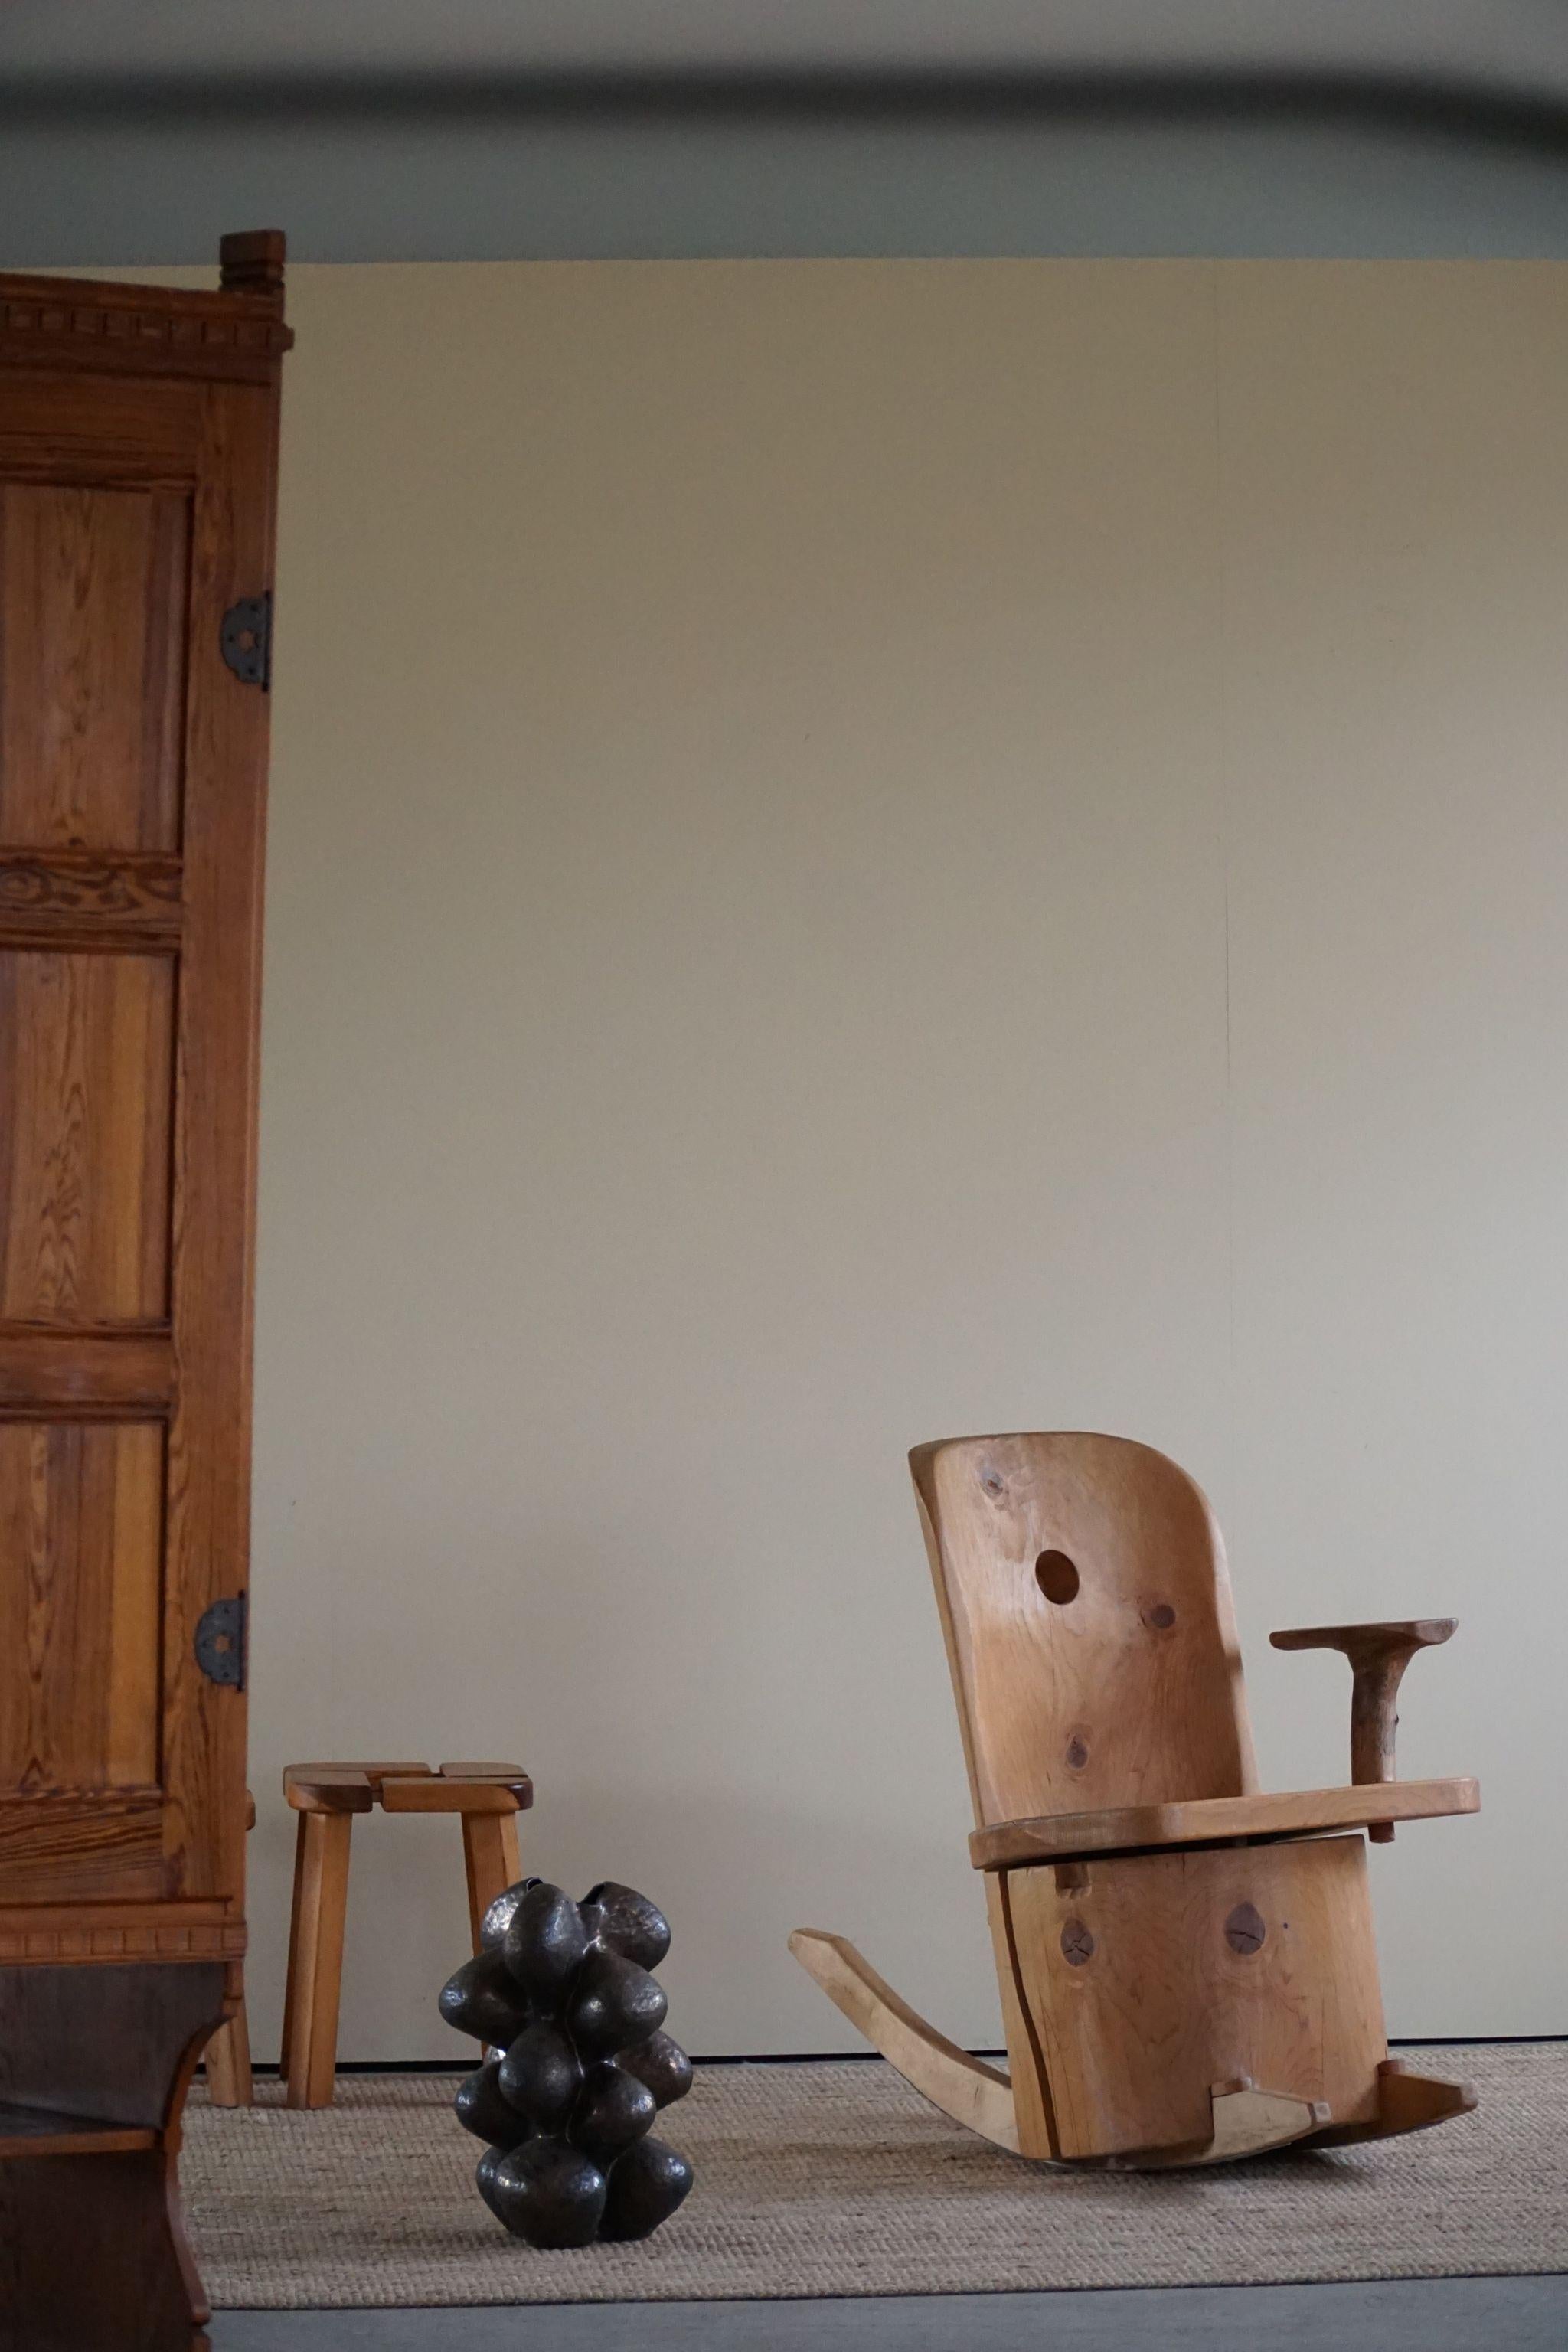 Ein atemberaubendes Sammlerstück des finnischen Künstlers Matti Martikka. Ein Schaukelstuhl aus massivem Kiefernholz, hergestellt aus umgestürzten Baumstämmen. Dieser Stumpfstuhl stammt aus einem Museum in seiner Heimatstadt Lappeenranta.

Eine